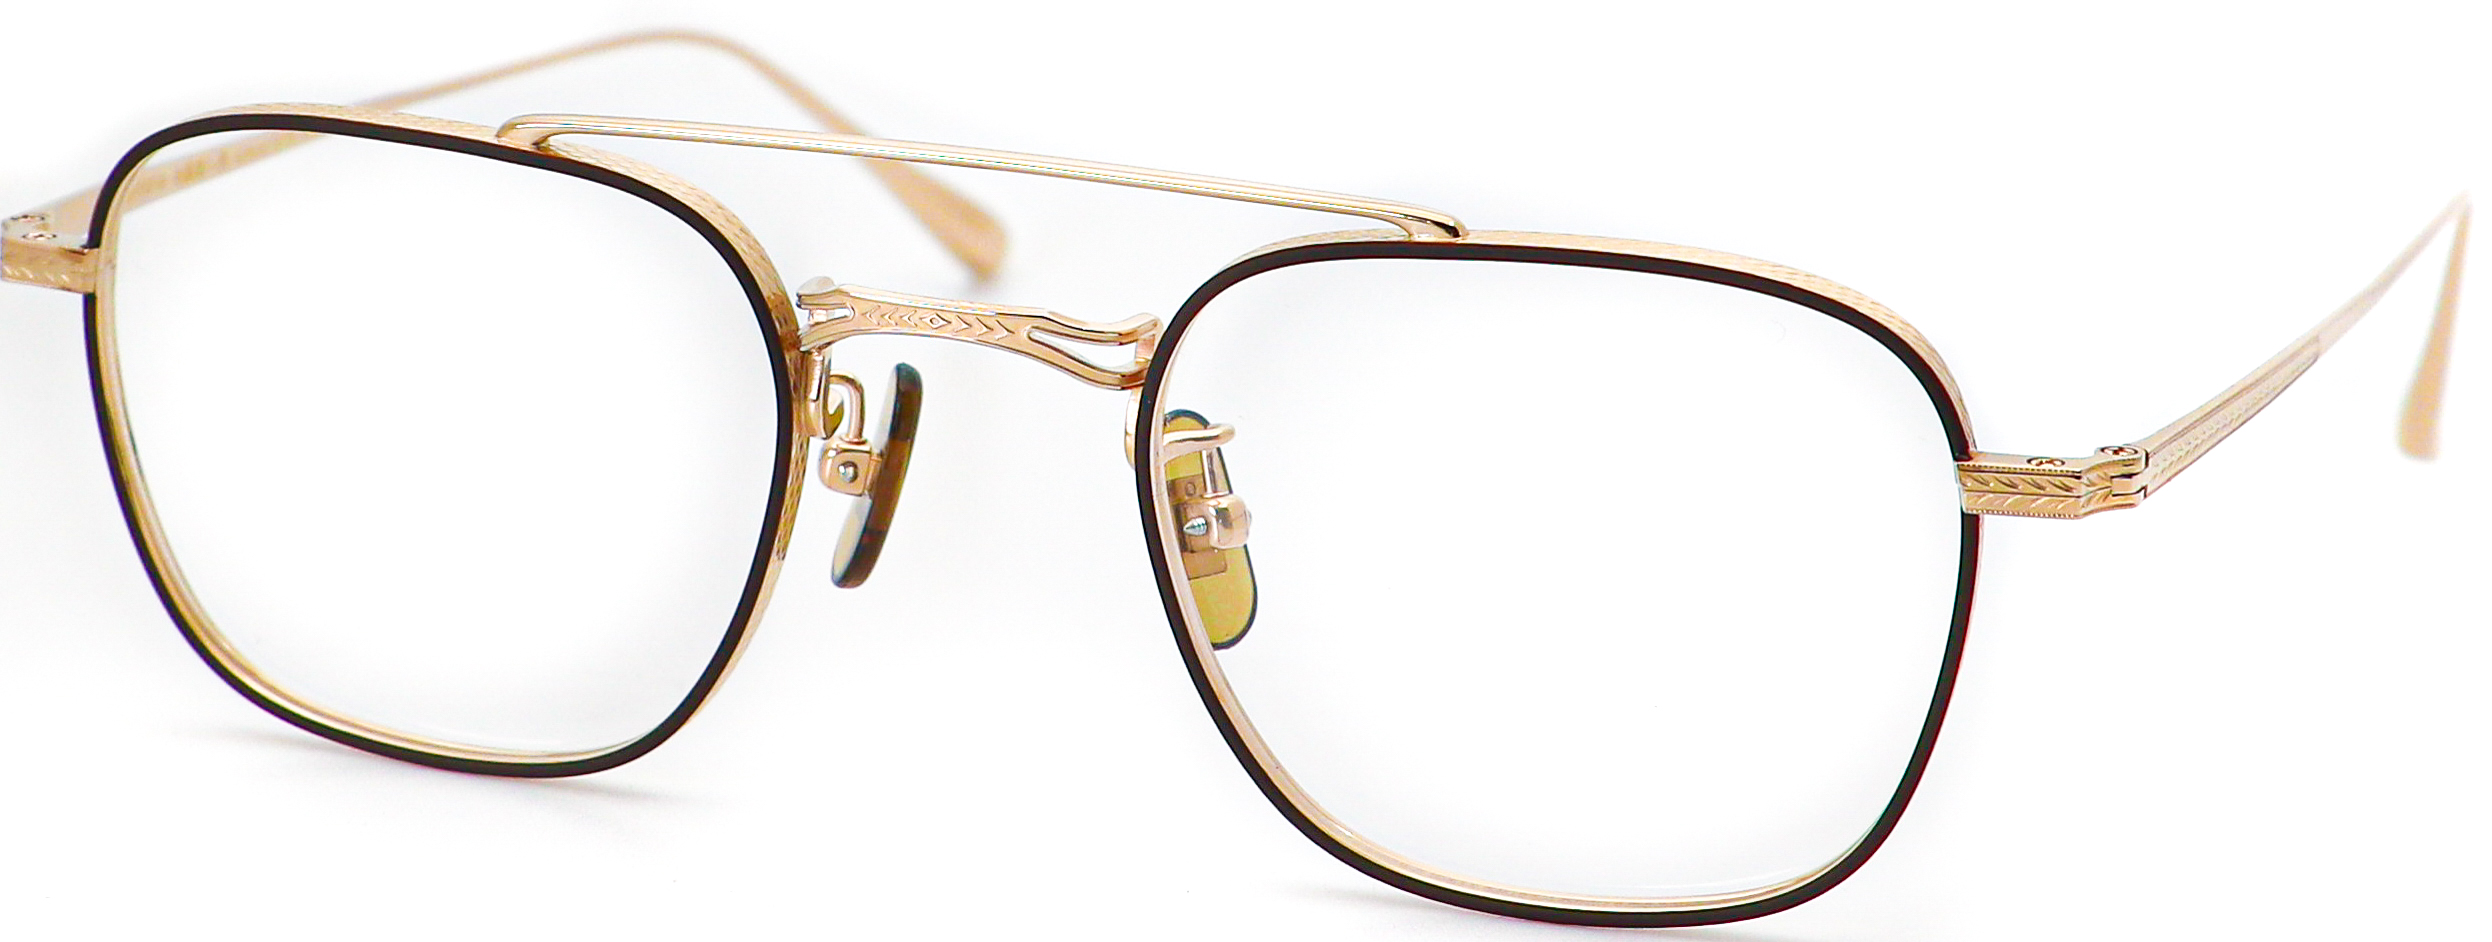 眼鏡のカラータイプC-1 Brown-Matt/Gold